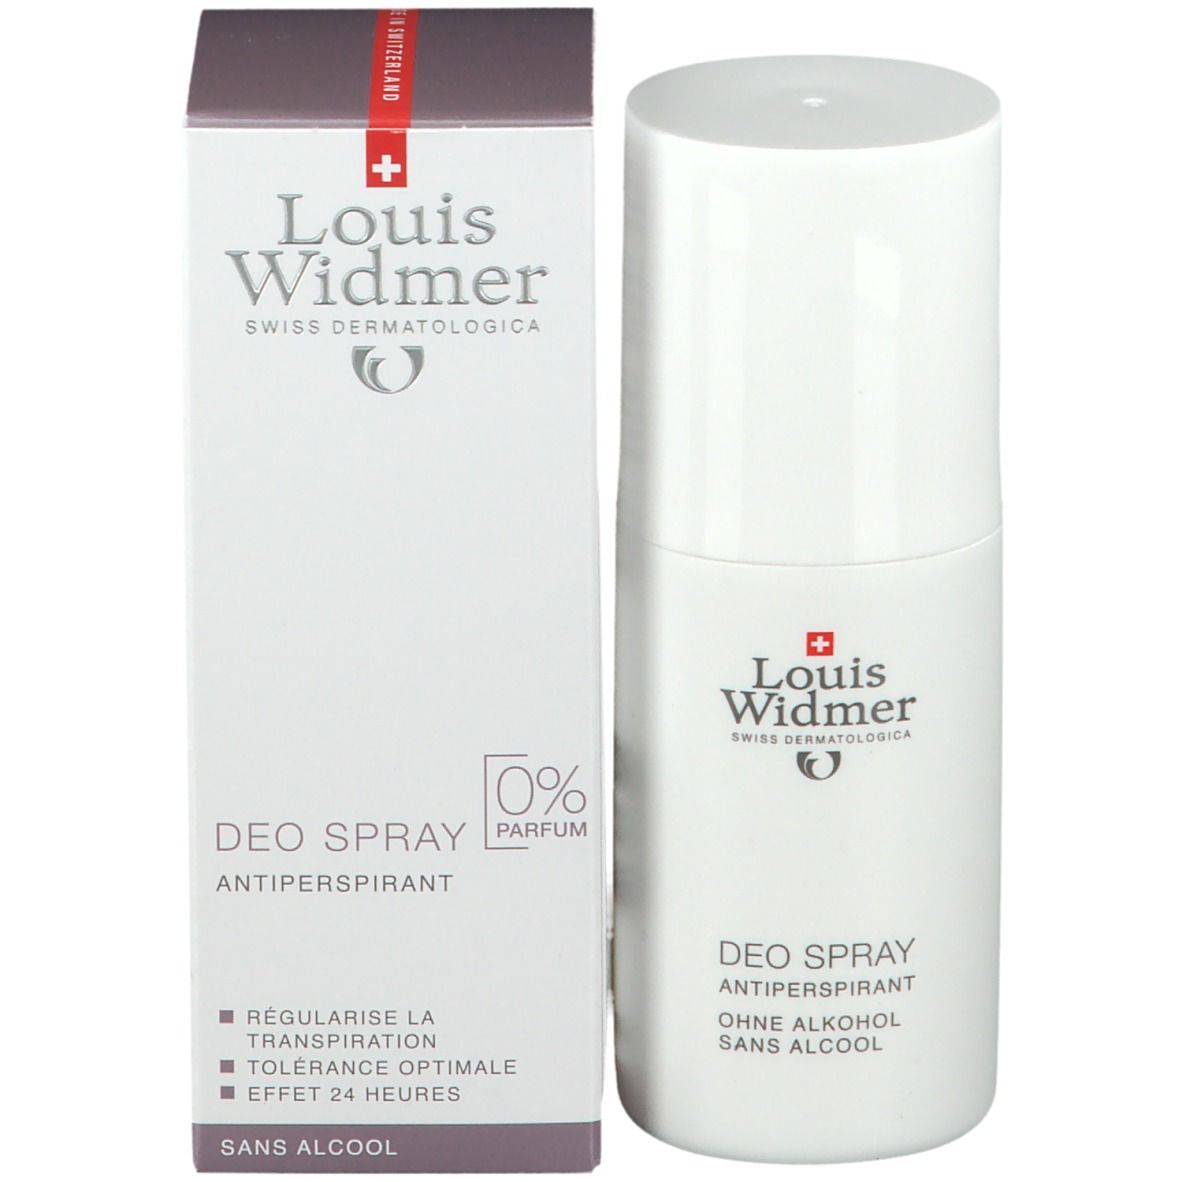 Louis Widmer Deo-Spray unparfümiert